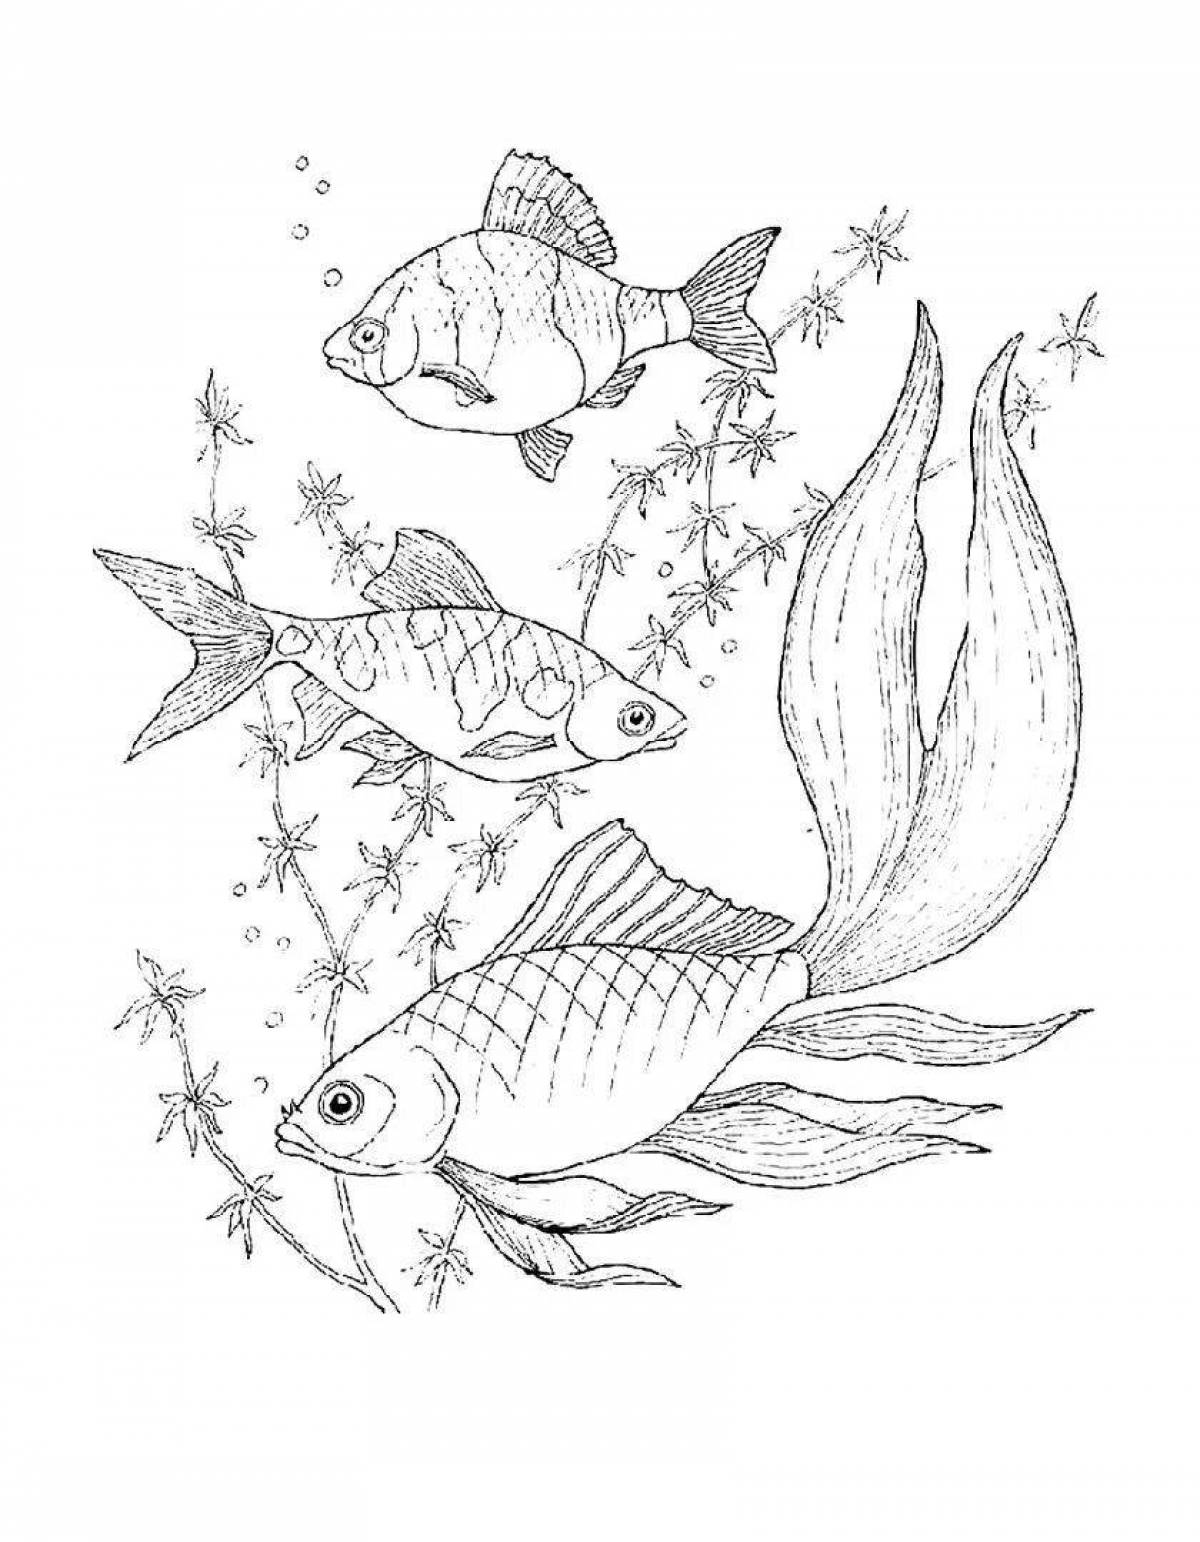 Fun aquarium fish coloring book for kids